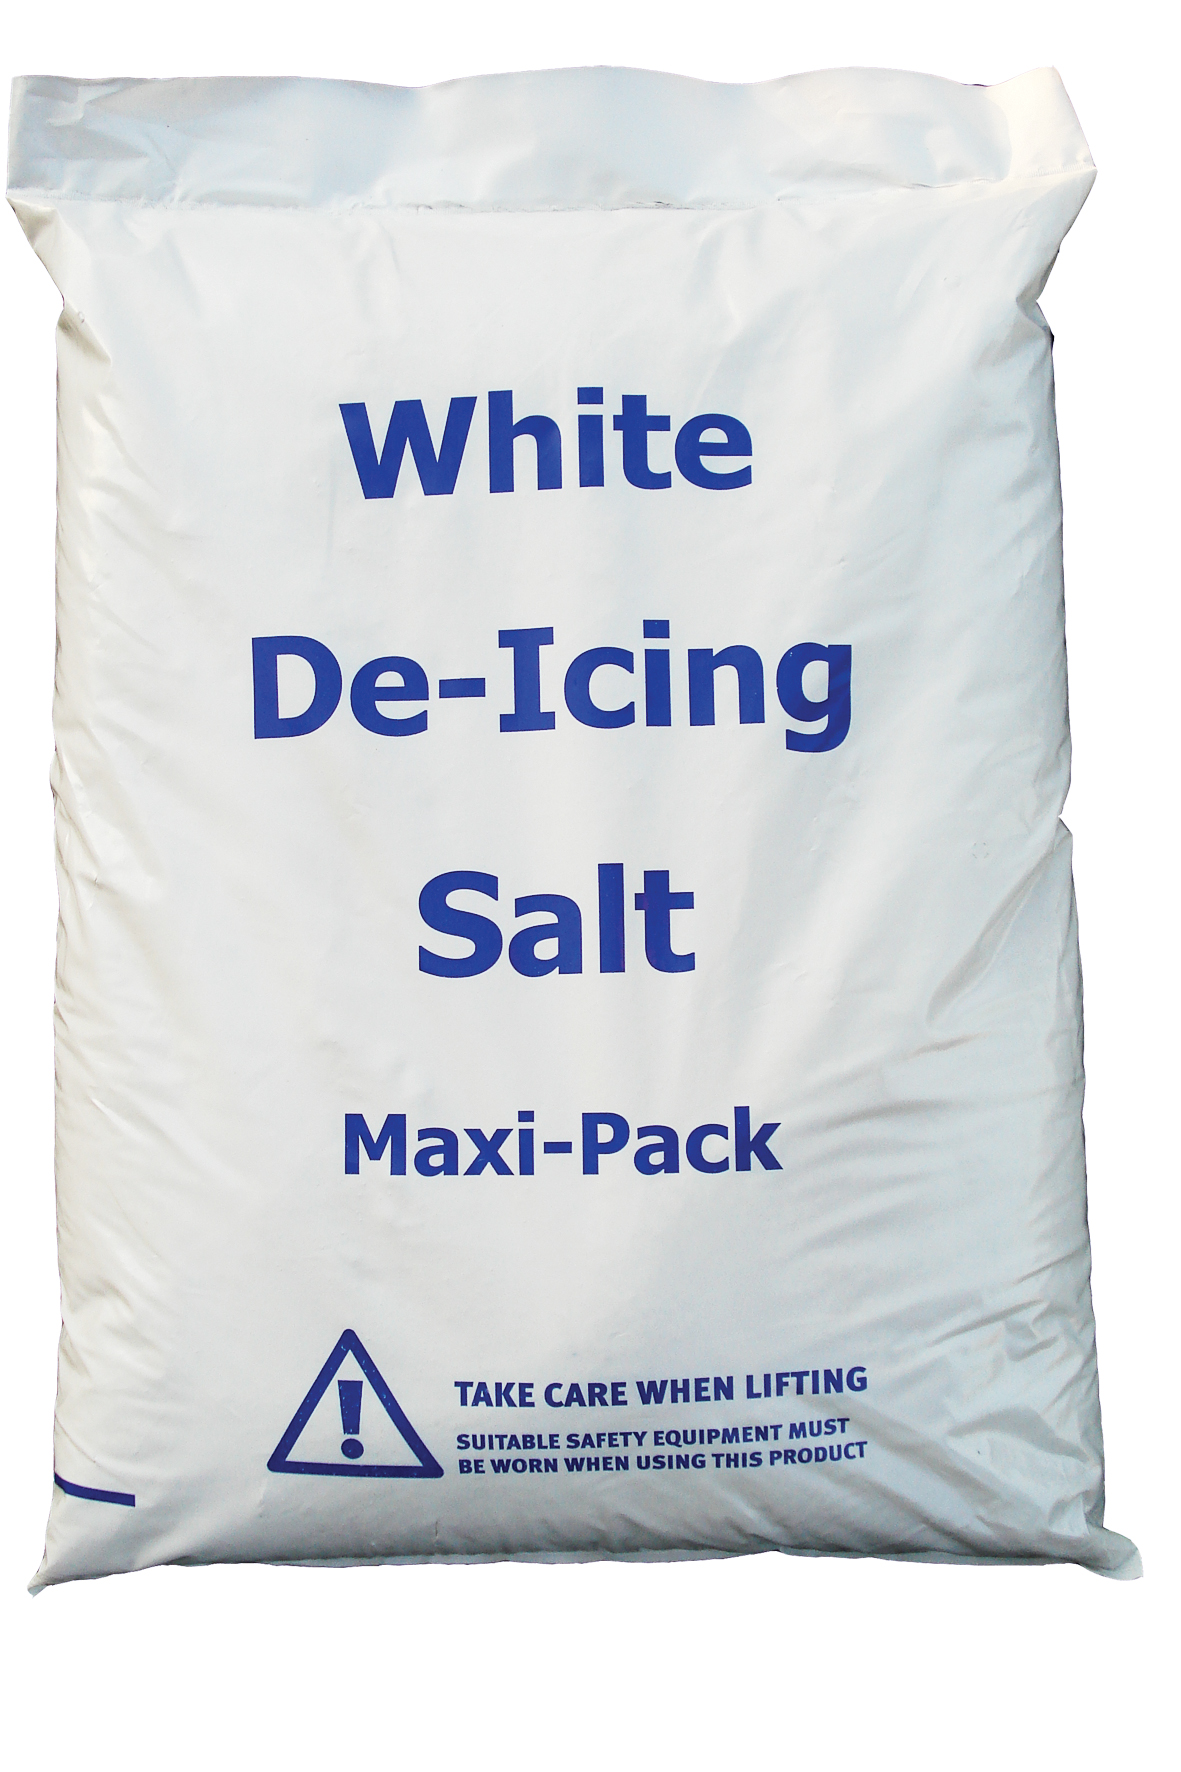 White De-icing Salt, 25kg